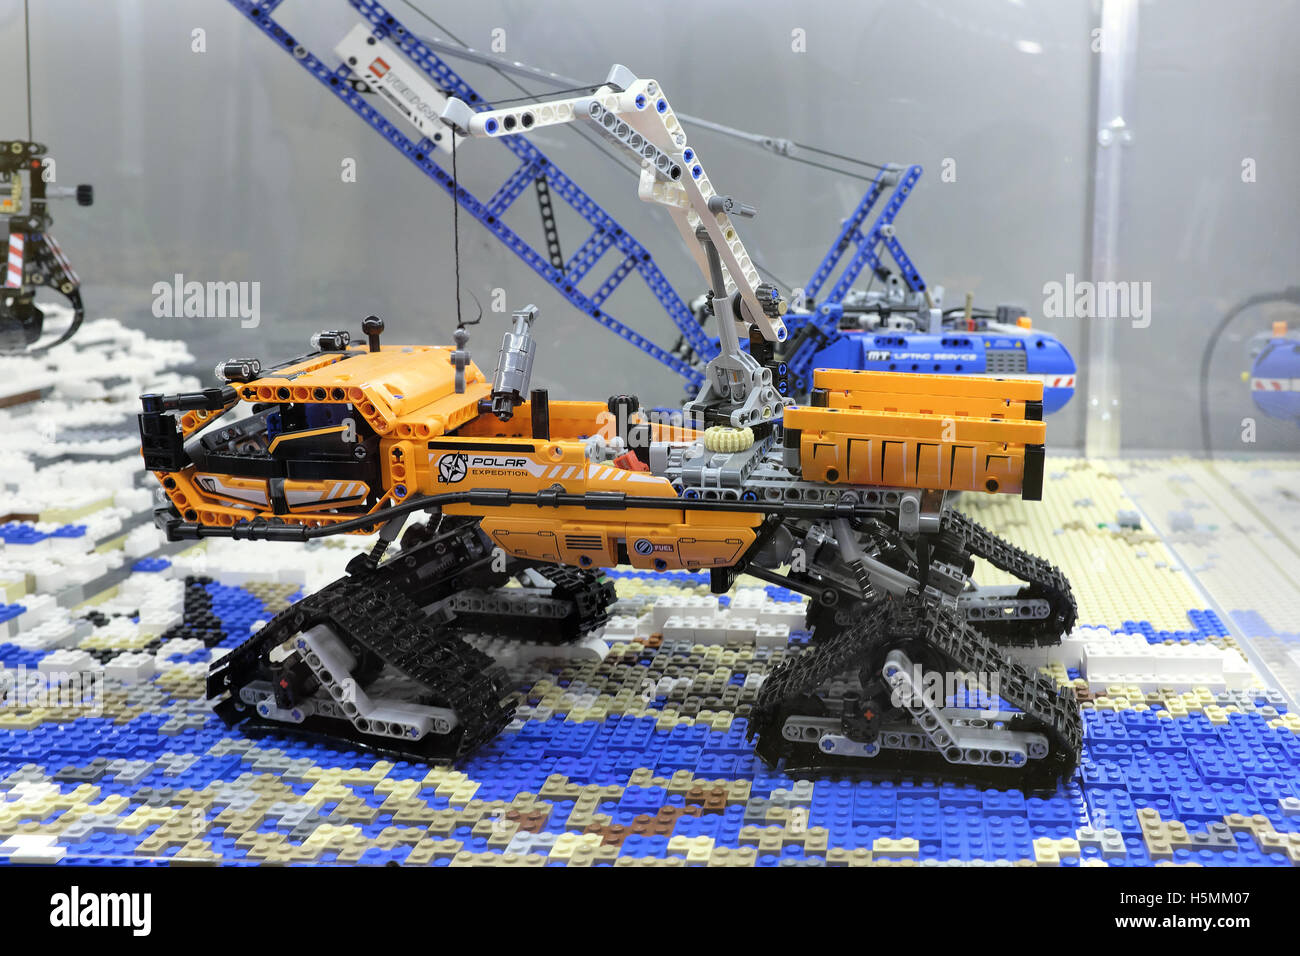 Mining machine made of Lego blocks, exhibition in Rzeszów, Poland Stock  Photo - Alamy